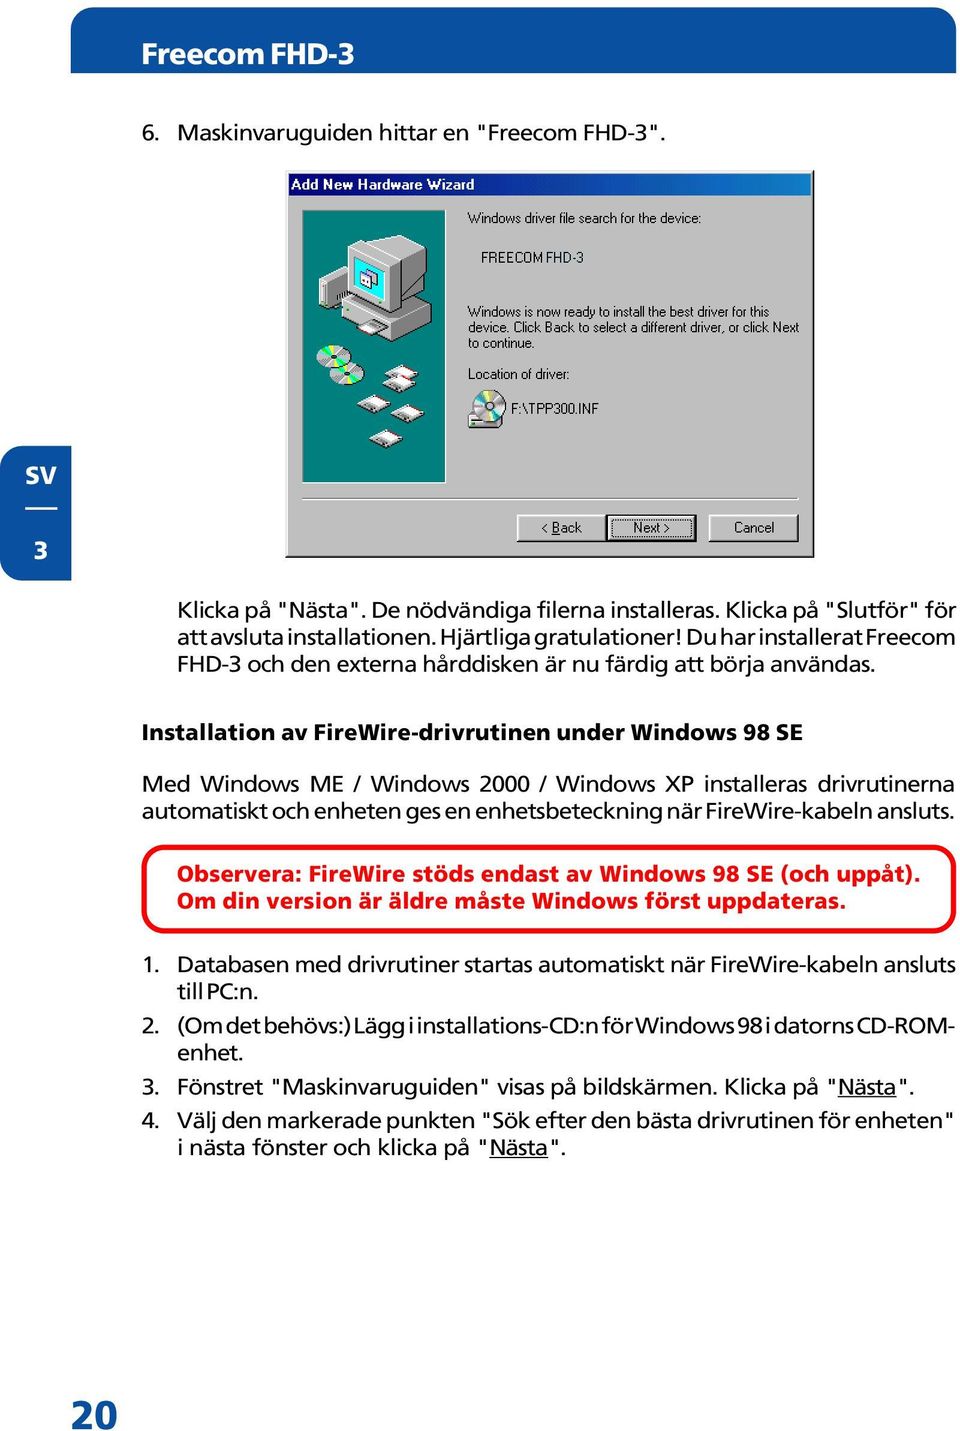 Installation av FireWire-drivrutinen under Windows 98 SE Med Windows ME / Windows 2000 / Windows XP installeras drivrutinerna automatiskt och enheten ges en enhetsbeteckning när FireWire-kabeln